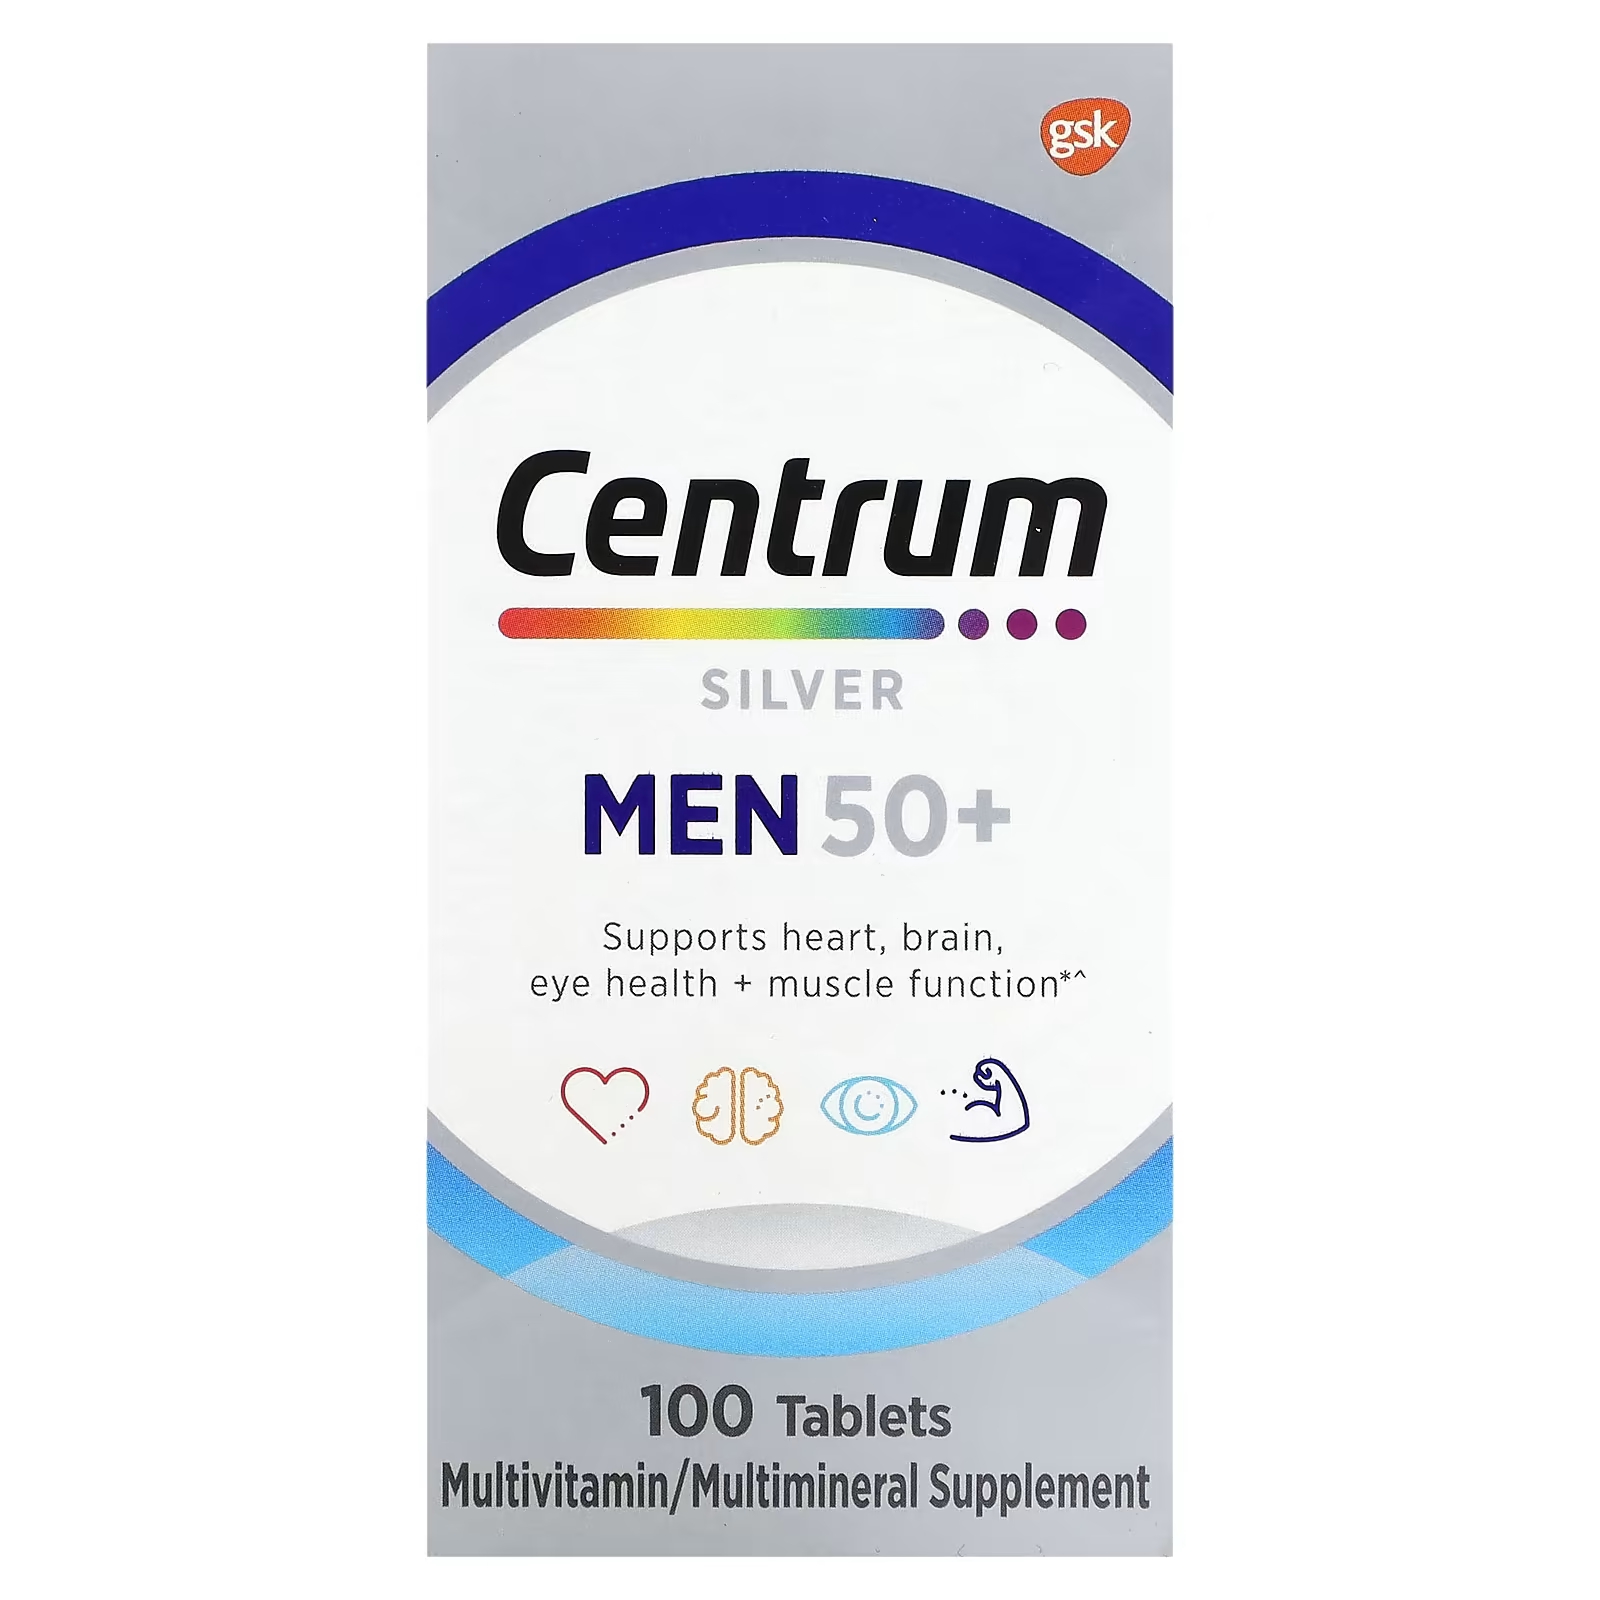 Мультивитаминная добавка Centrum Silver для мужчин 50+, 100 таблеток